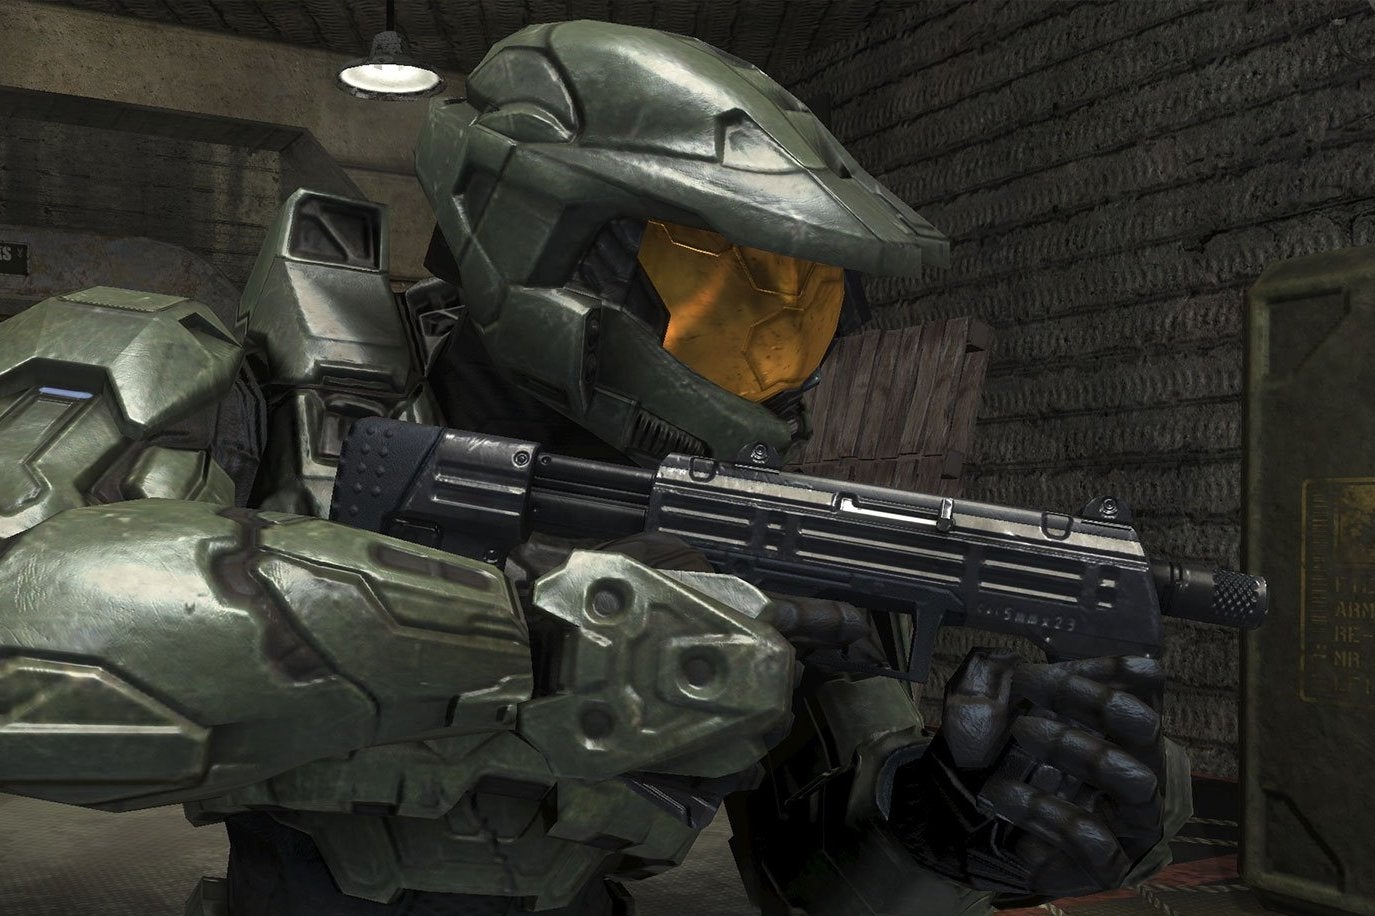 Immagine di Halo 2 e Halo 2 Anniversary a confronto